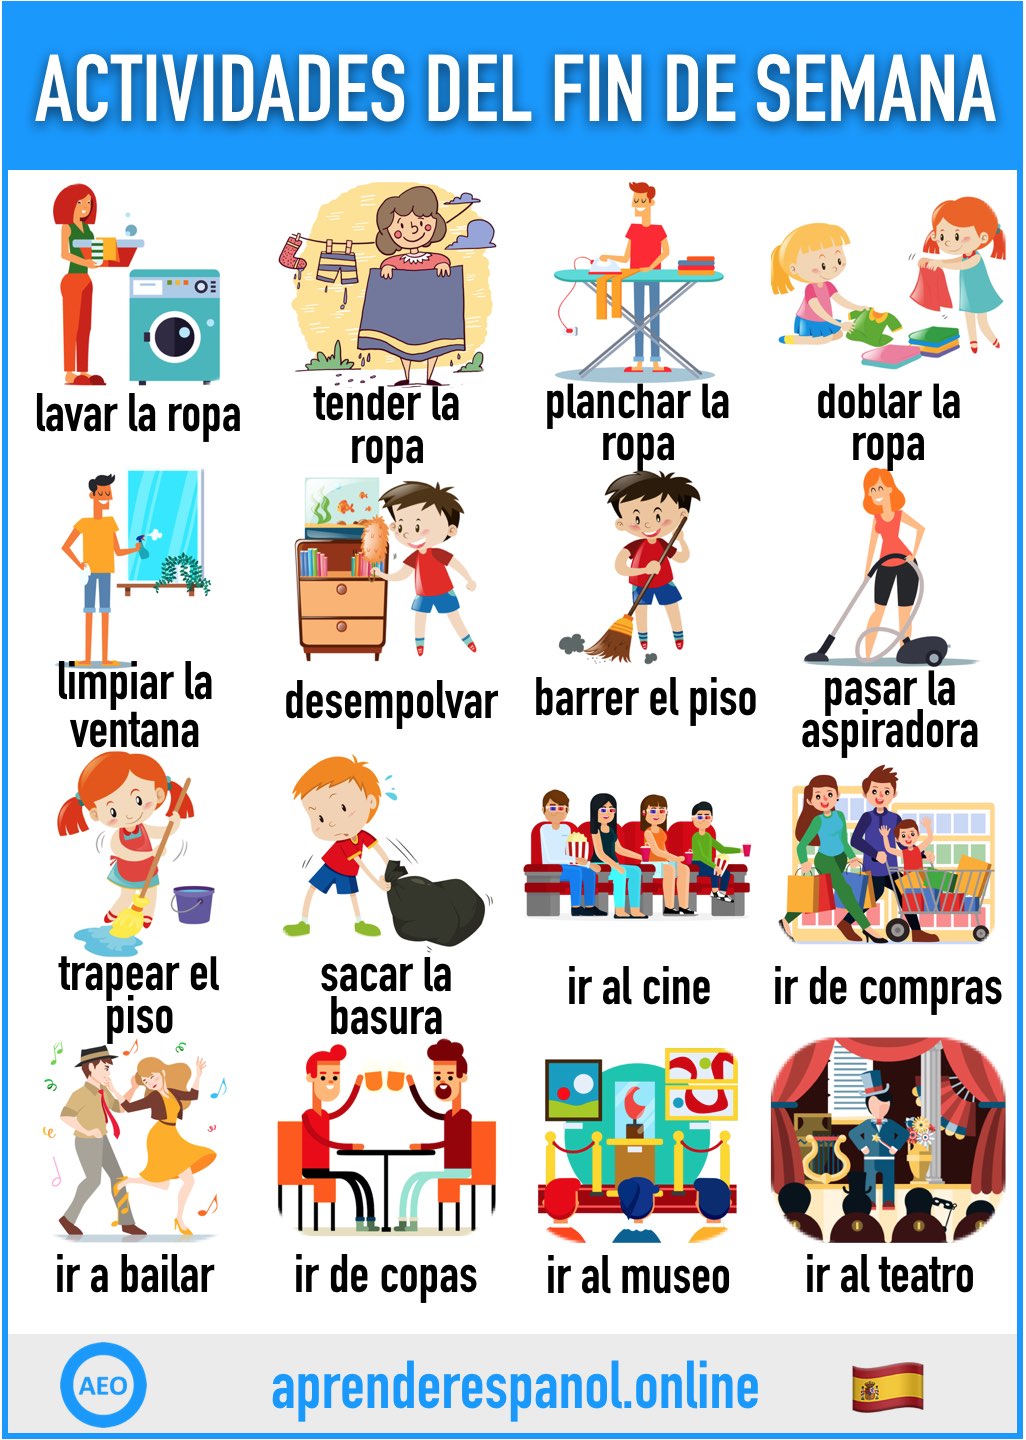 actividades del fin de semana en español - aprender español online - vocabulario de las actividades del fin de semana en español